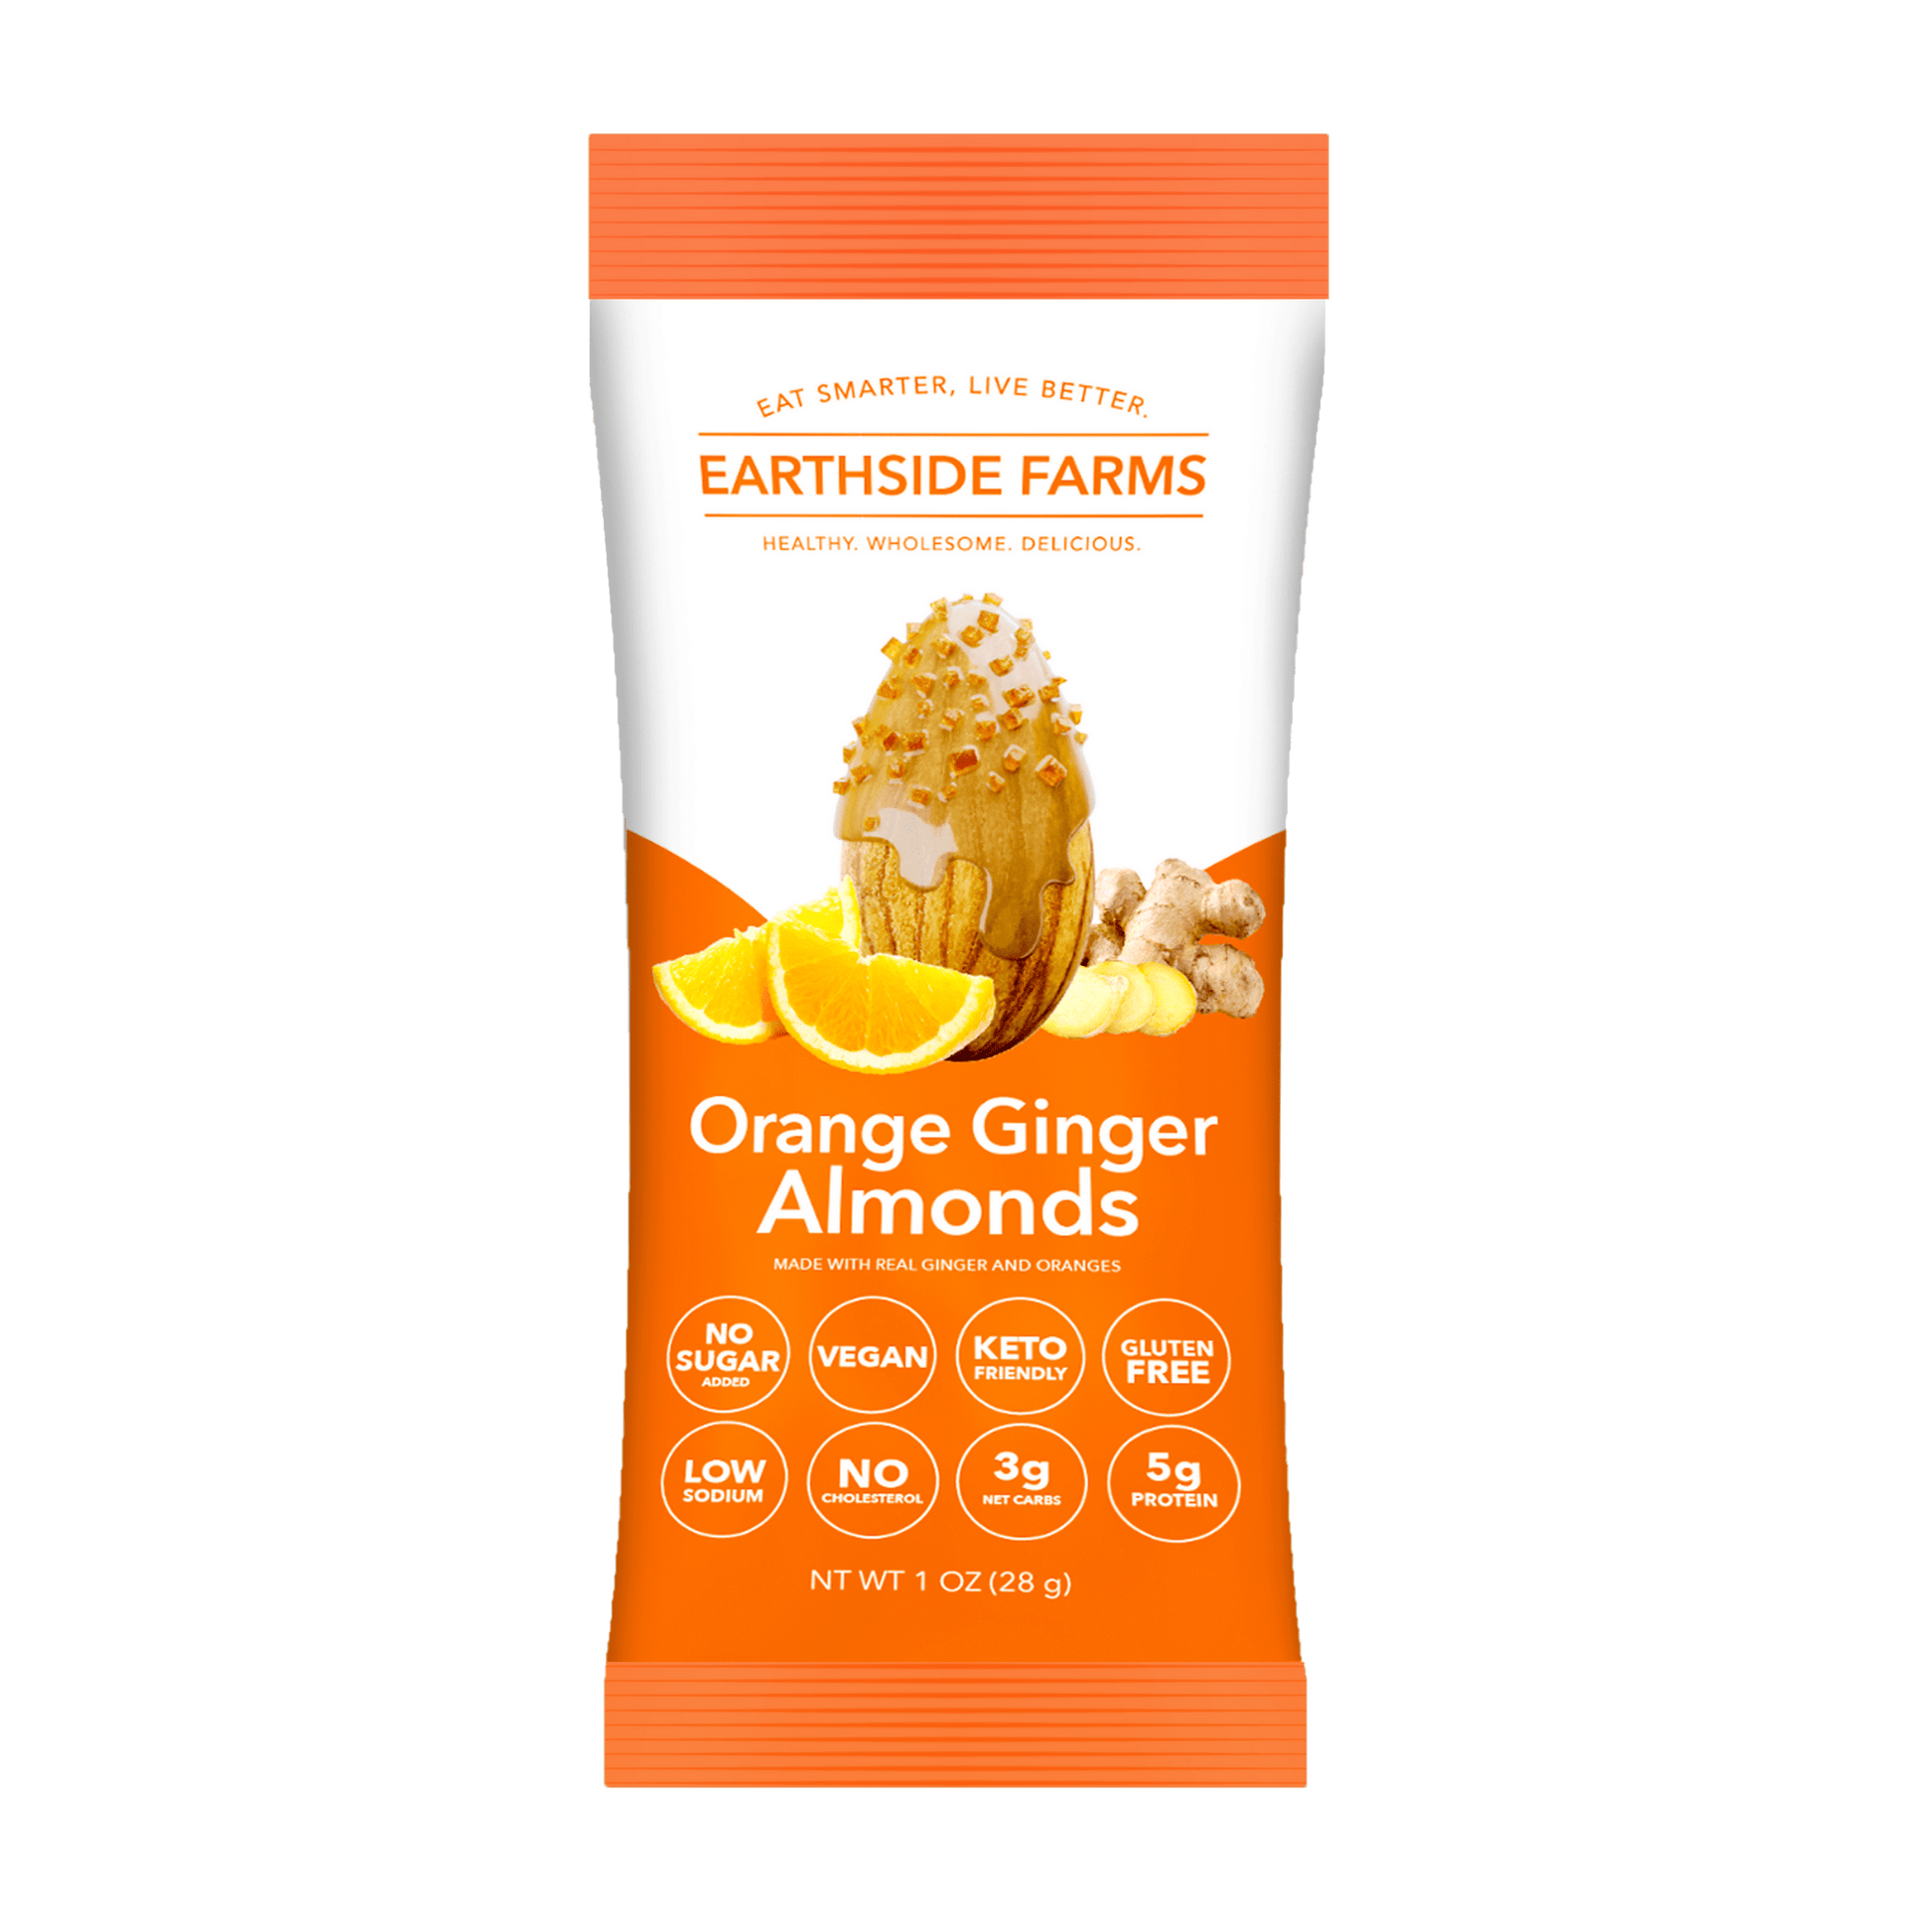 Orange Ginger Almonds - Earthside Farms